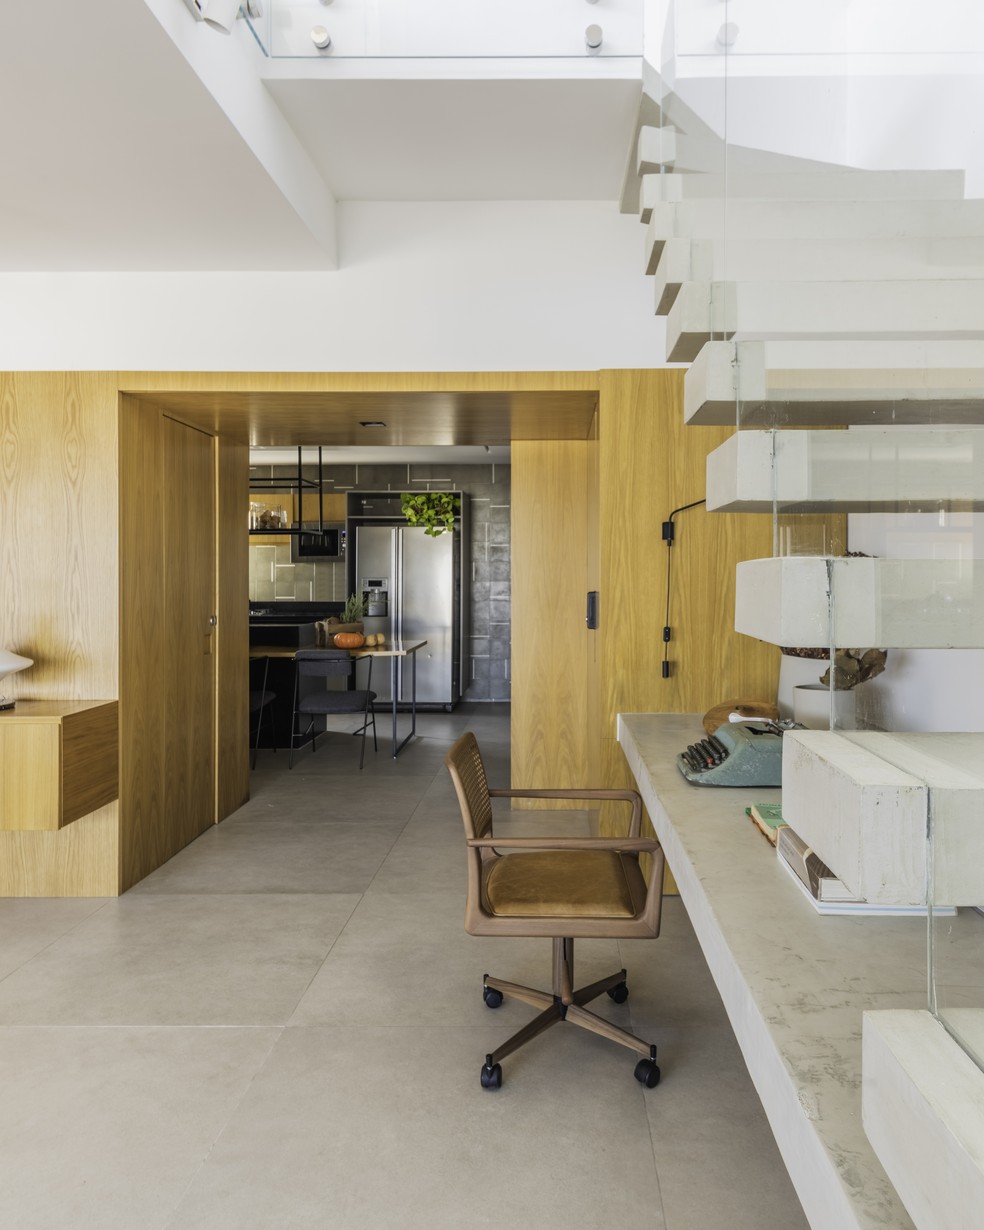 Esse vão de passagem entre cozinha e living foi ampliado durante a reforma — Foto: Guilherme Pucci